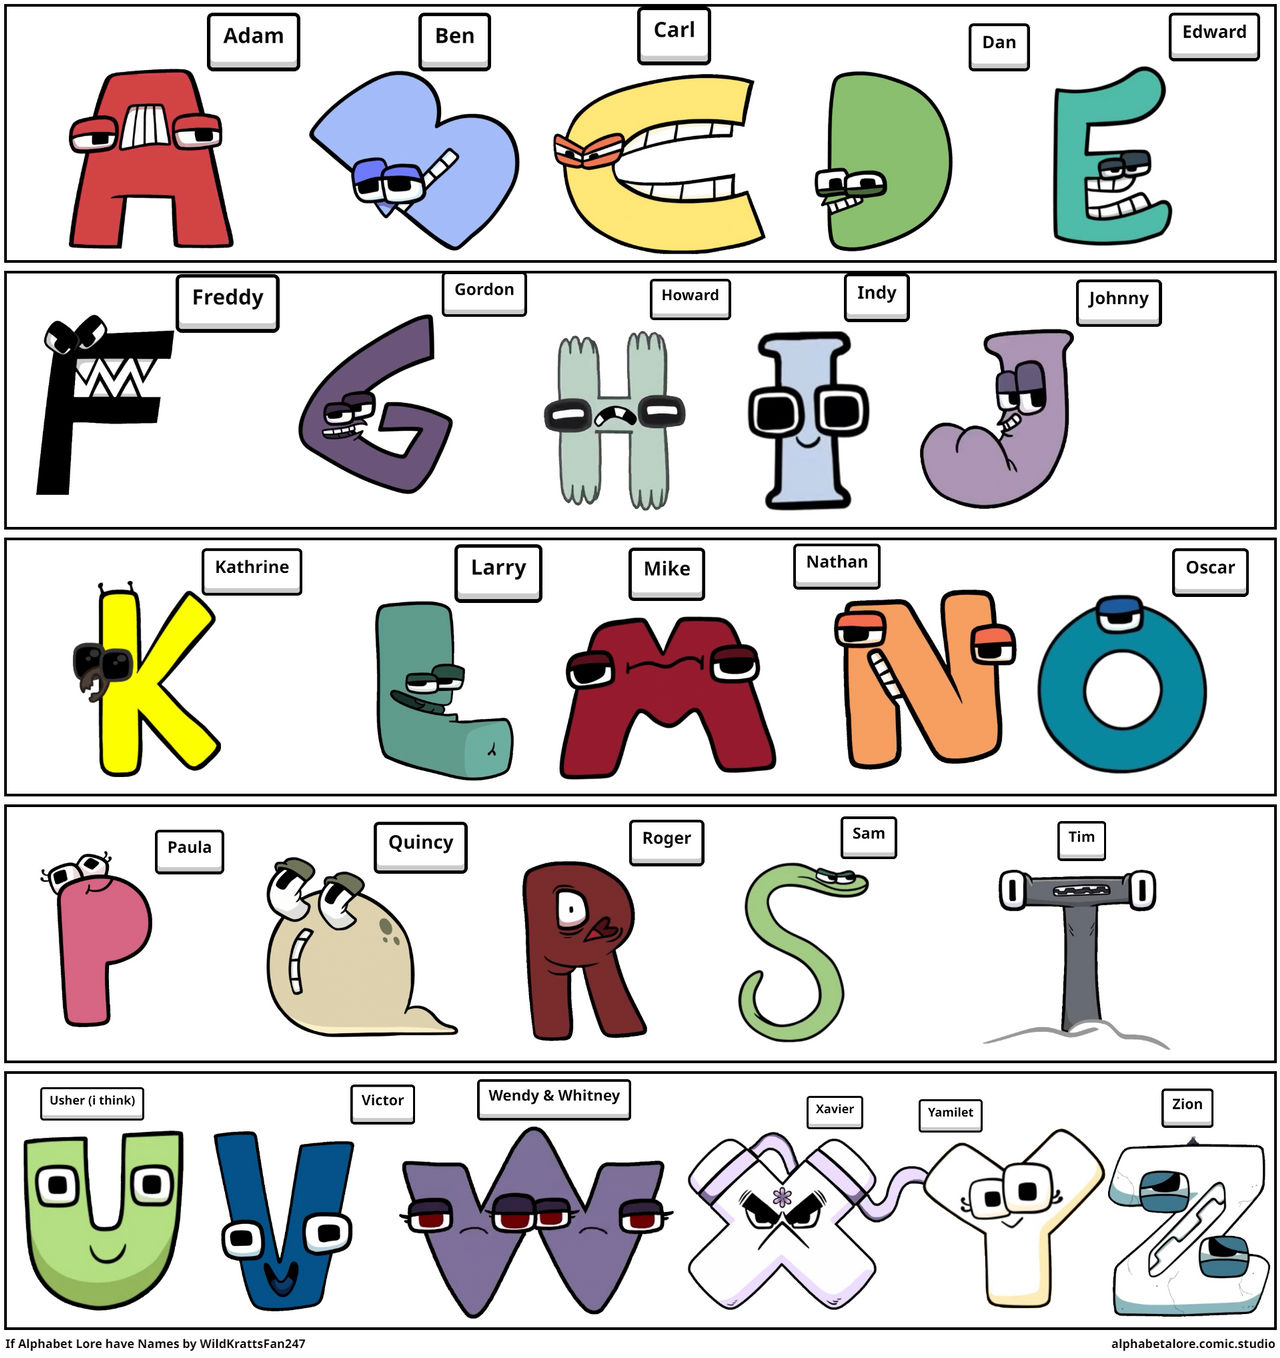 Alphabet Lore Comics by Isabellaxpnmickey47 on DeviantArt